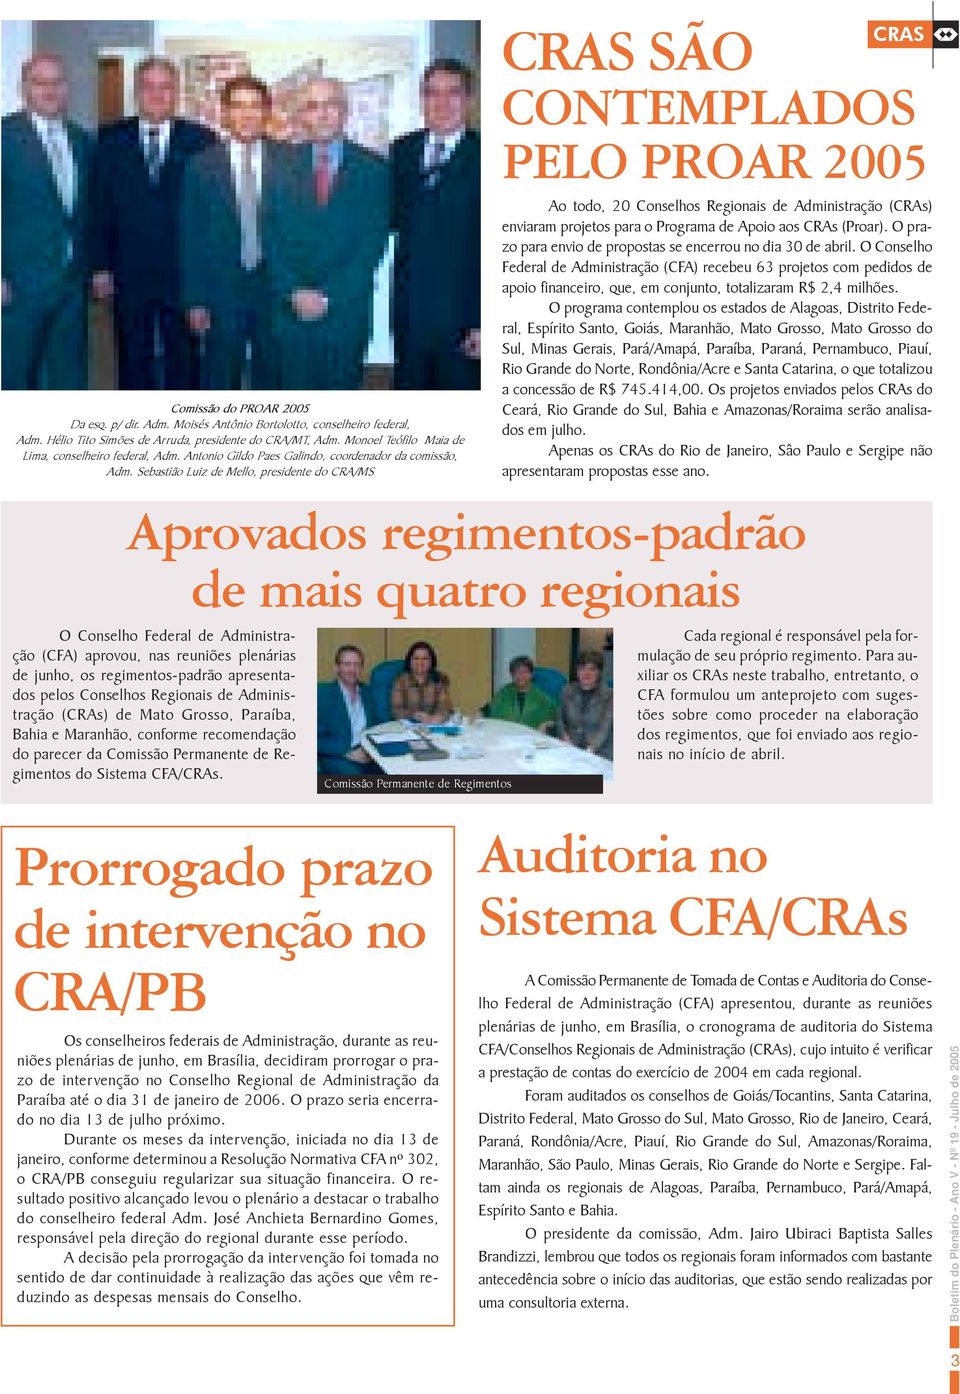 Sebastião Luiz de Mello, presidente do CRA/MS CRAS SÃO CONTEMPLADOS CRAS PELO PROAR 2005 Ao todo, 20 Conselhos Regionais de Administração (CRAs) enviaram projetos para o Programa de Apoio aos CRAs